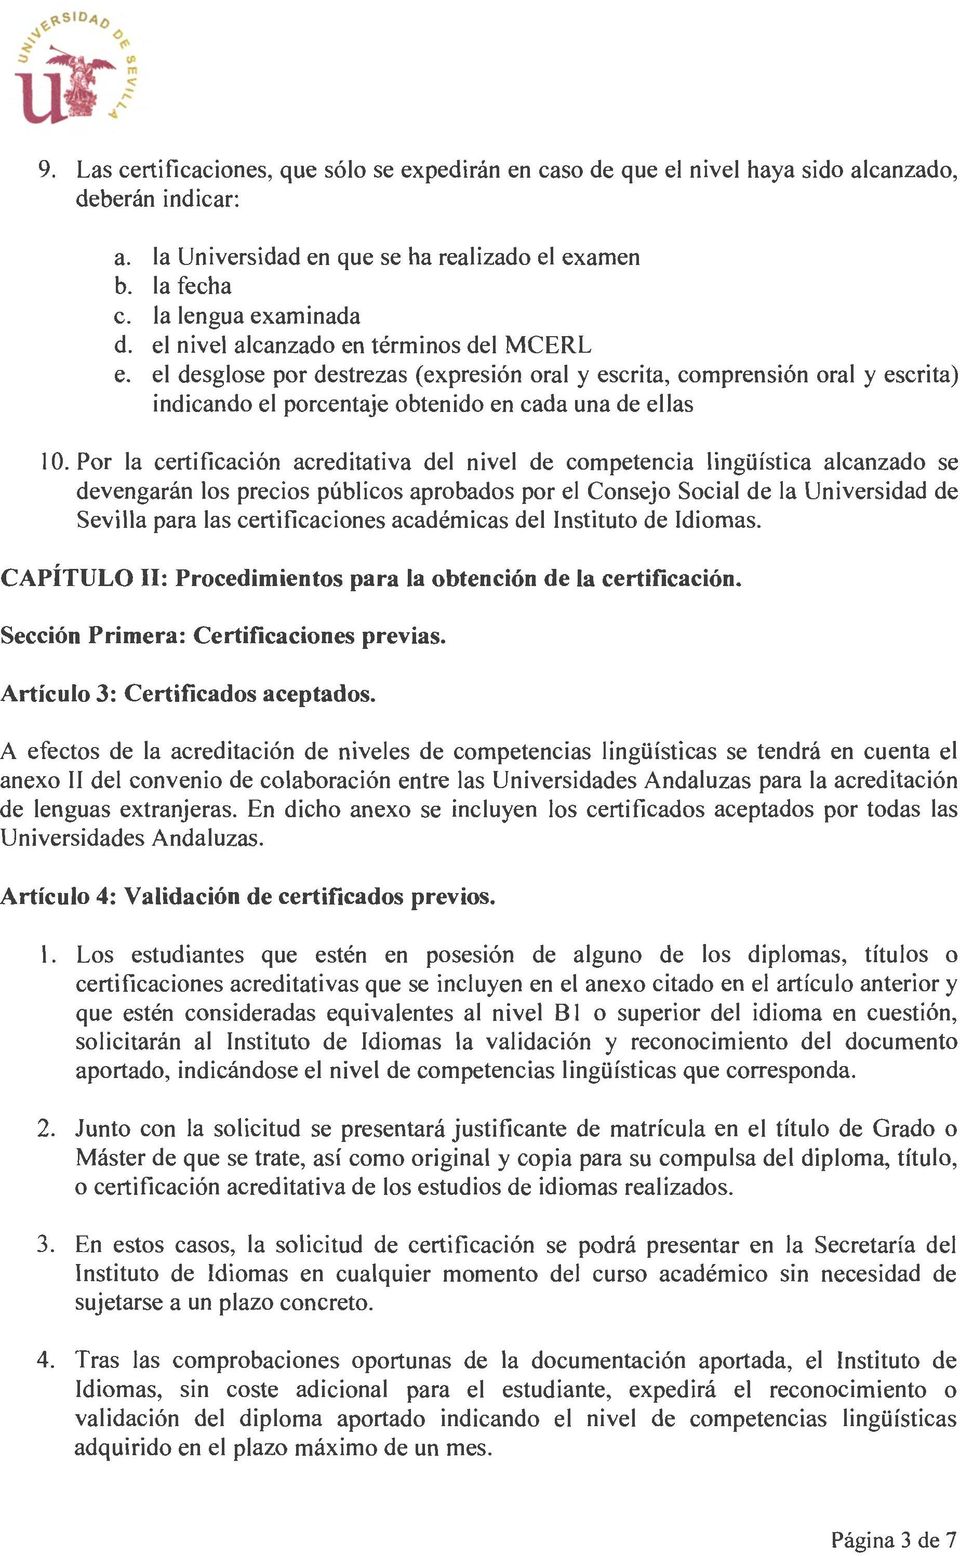 Por la certificación acreditativa del nivel de competencia lingüística alcanzado se devengarán los precios públicos aprobados por el Consejo Social de la Universidad de Sevilla para las